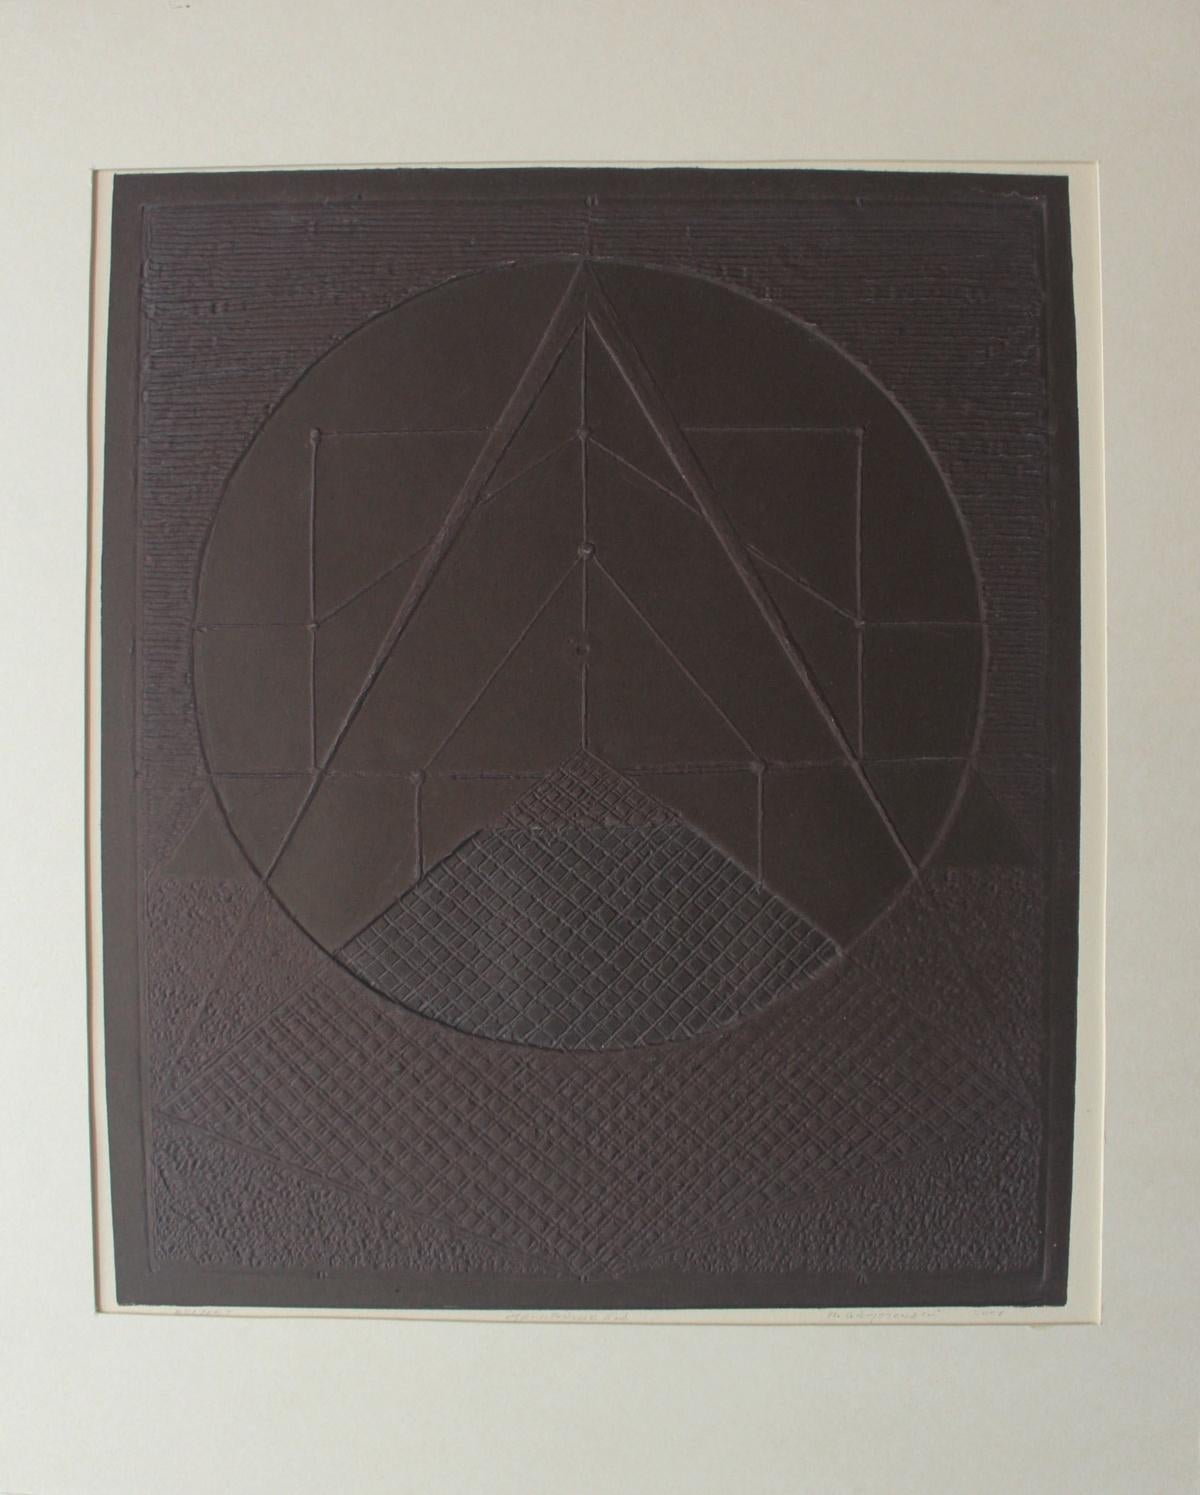 Relief I - XXIe siècle, graphisme abstrait contemporain, formes géométriques,  - Print de Ryszard Gieryszewski